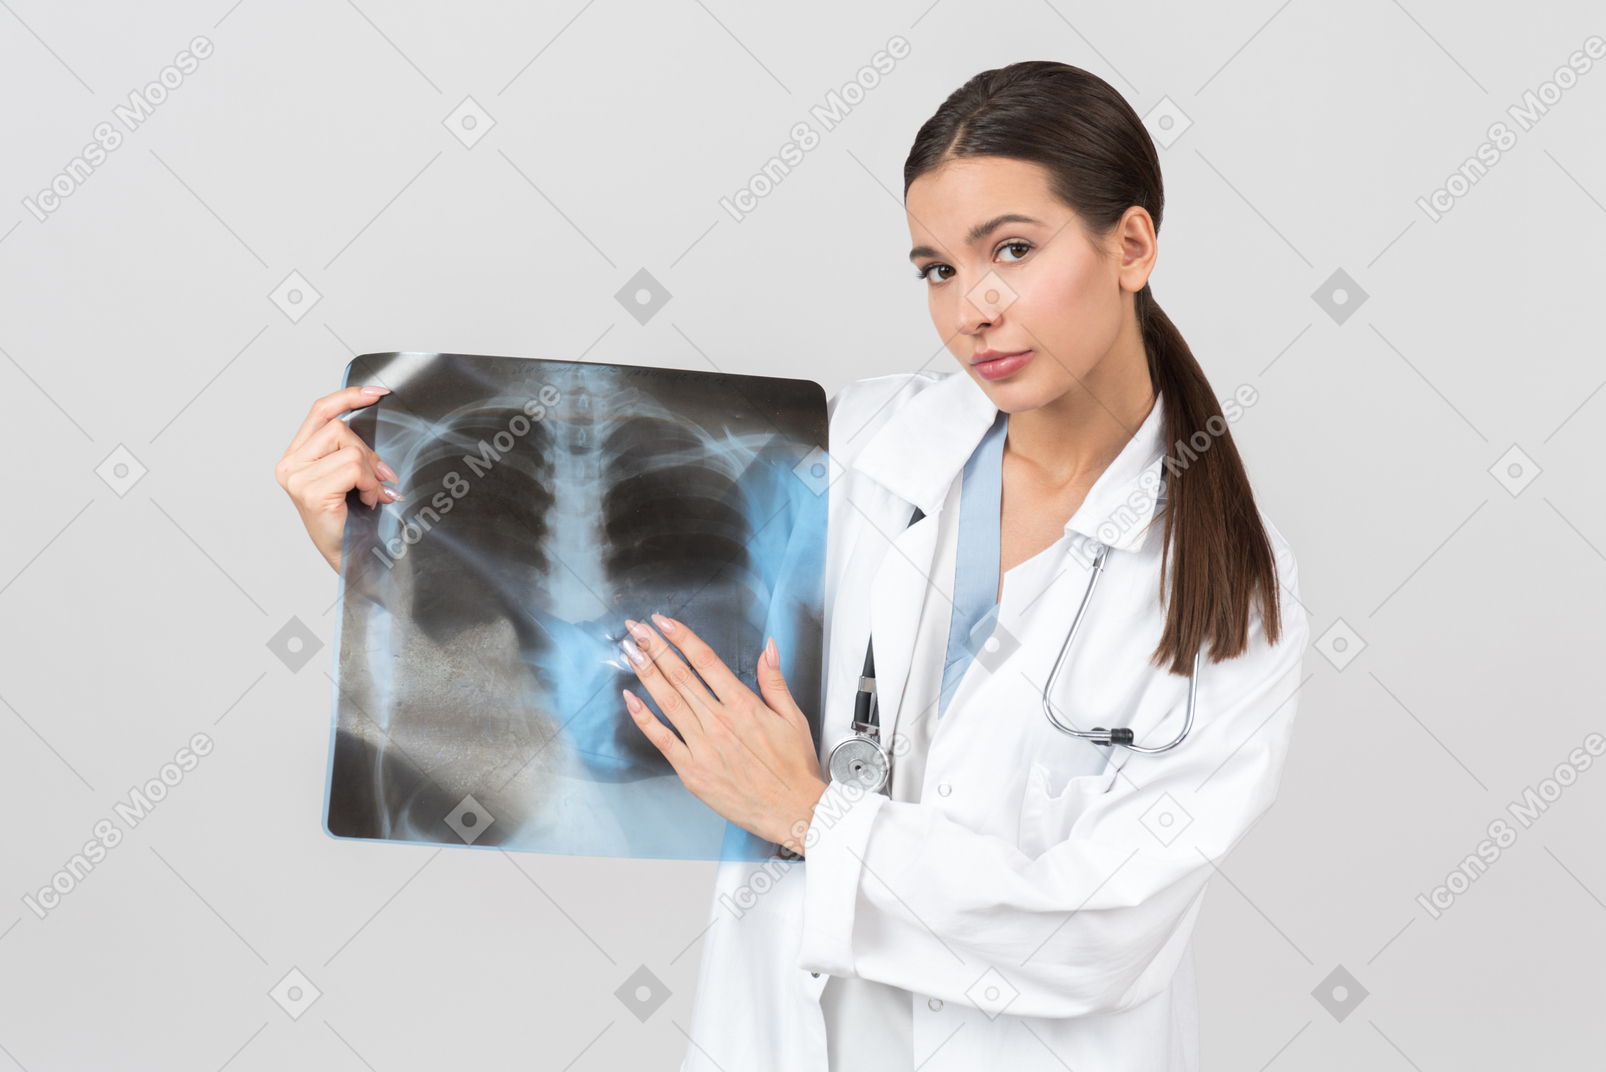 Überprüfen sie den röntgenscan erneut, bevor sie den patienten untersuchen